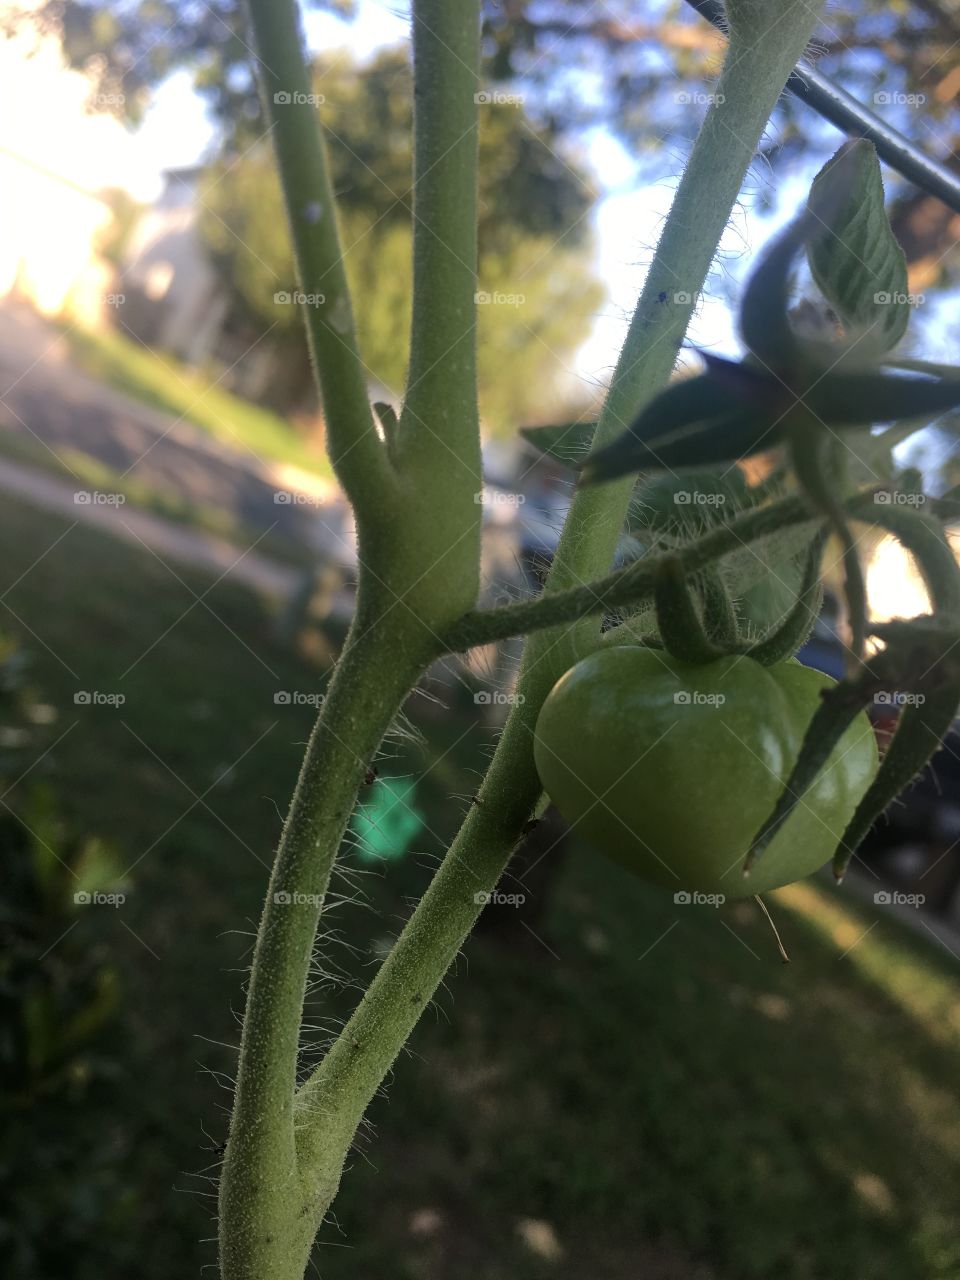 Our tomato 